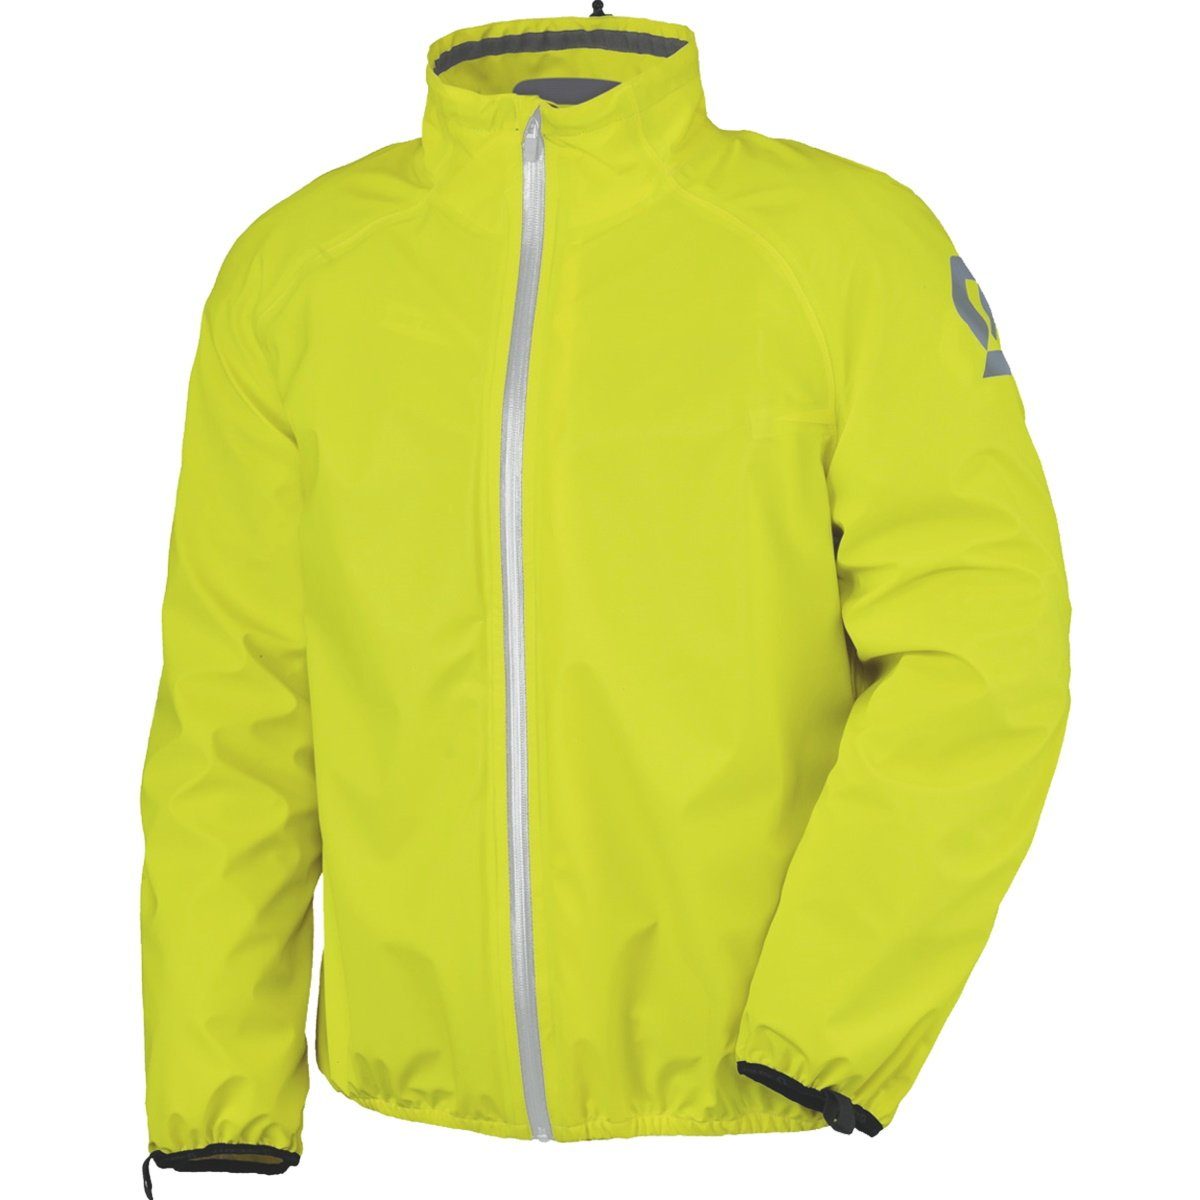 D-Size Motorradhose Pro gelb DP Scott neon-gelb Scott Ergonomic Kurzgröße Regenjacke